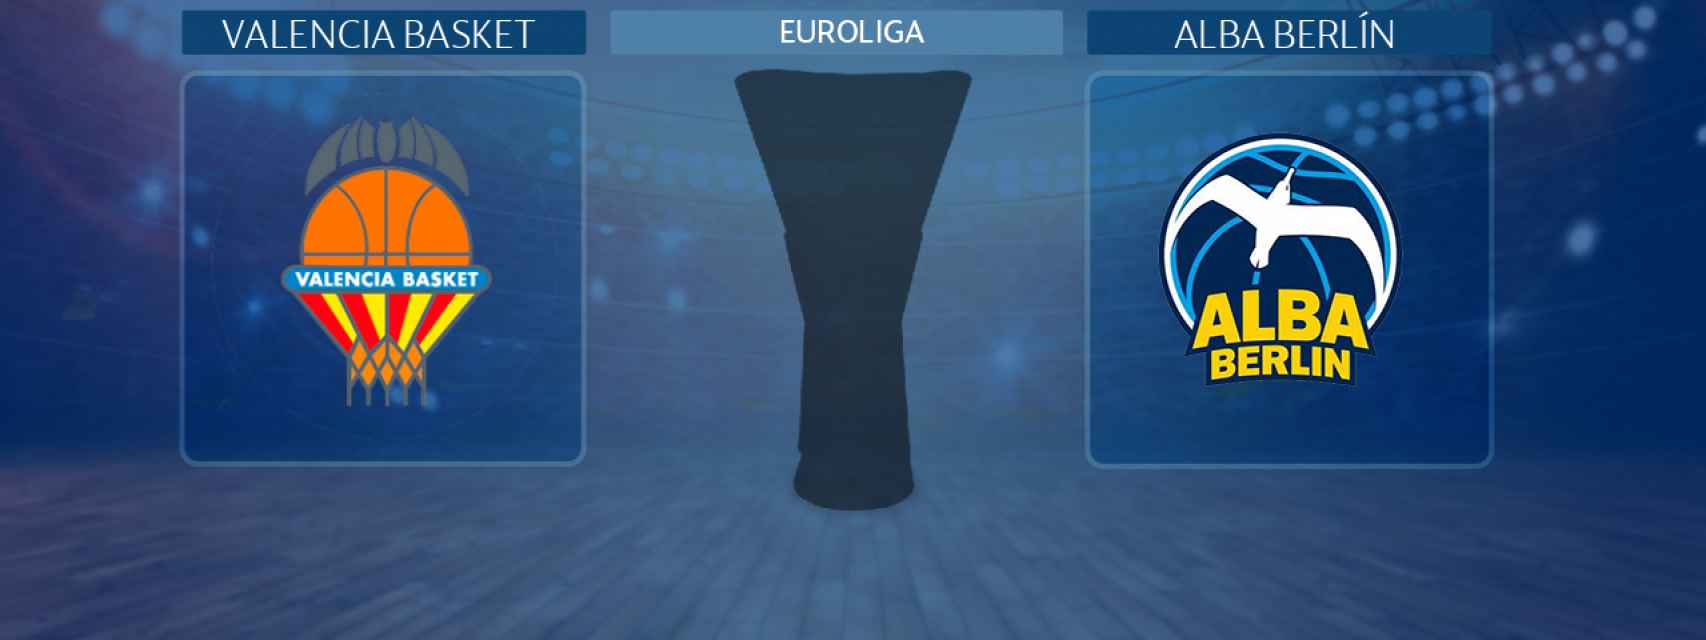 Valencia Basket - Alba Berlín, partido de la Euroliga